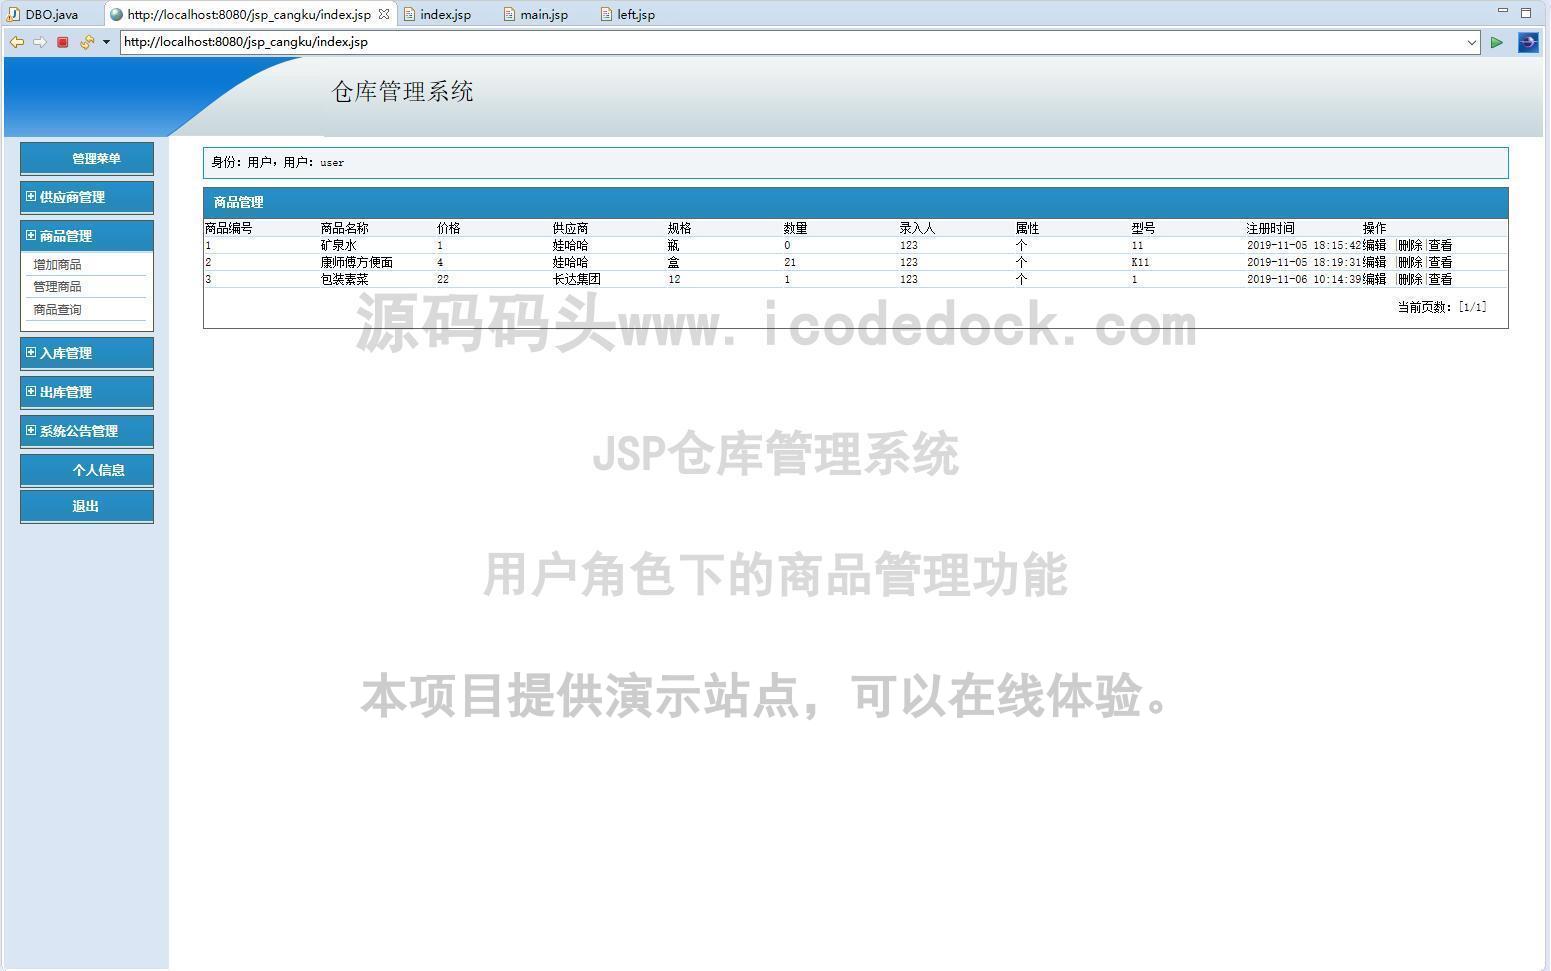 源码码头-JSP仓库管理系统-用户角色-商品管理